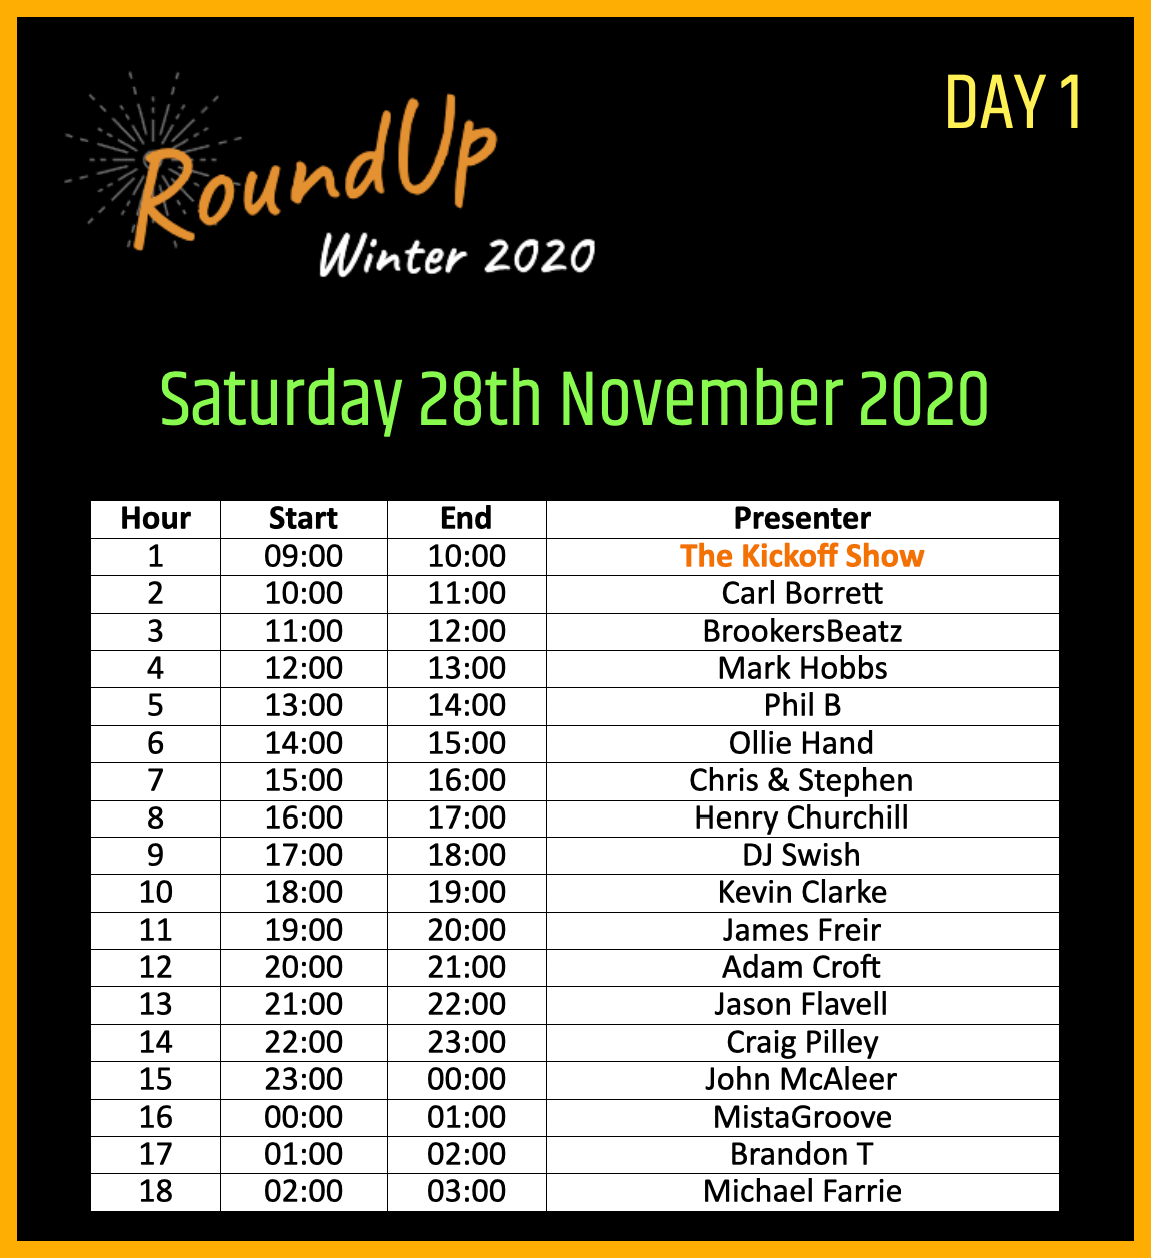 Day 1 schedule